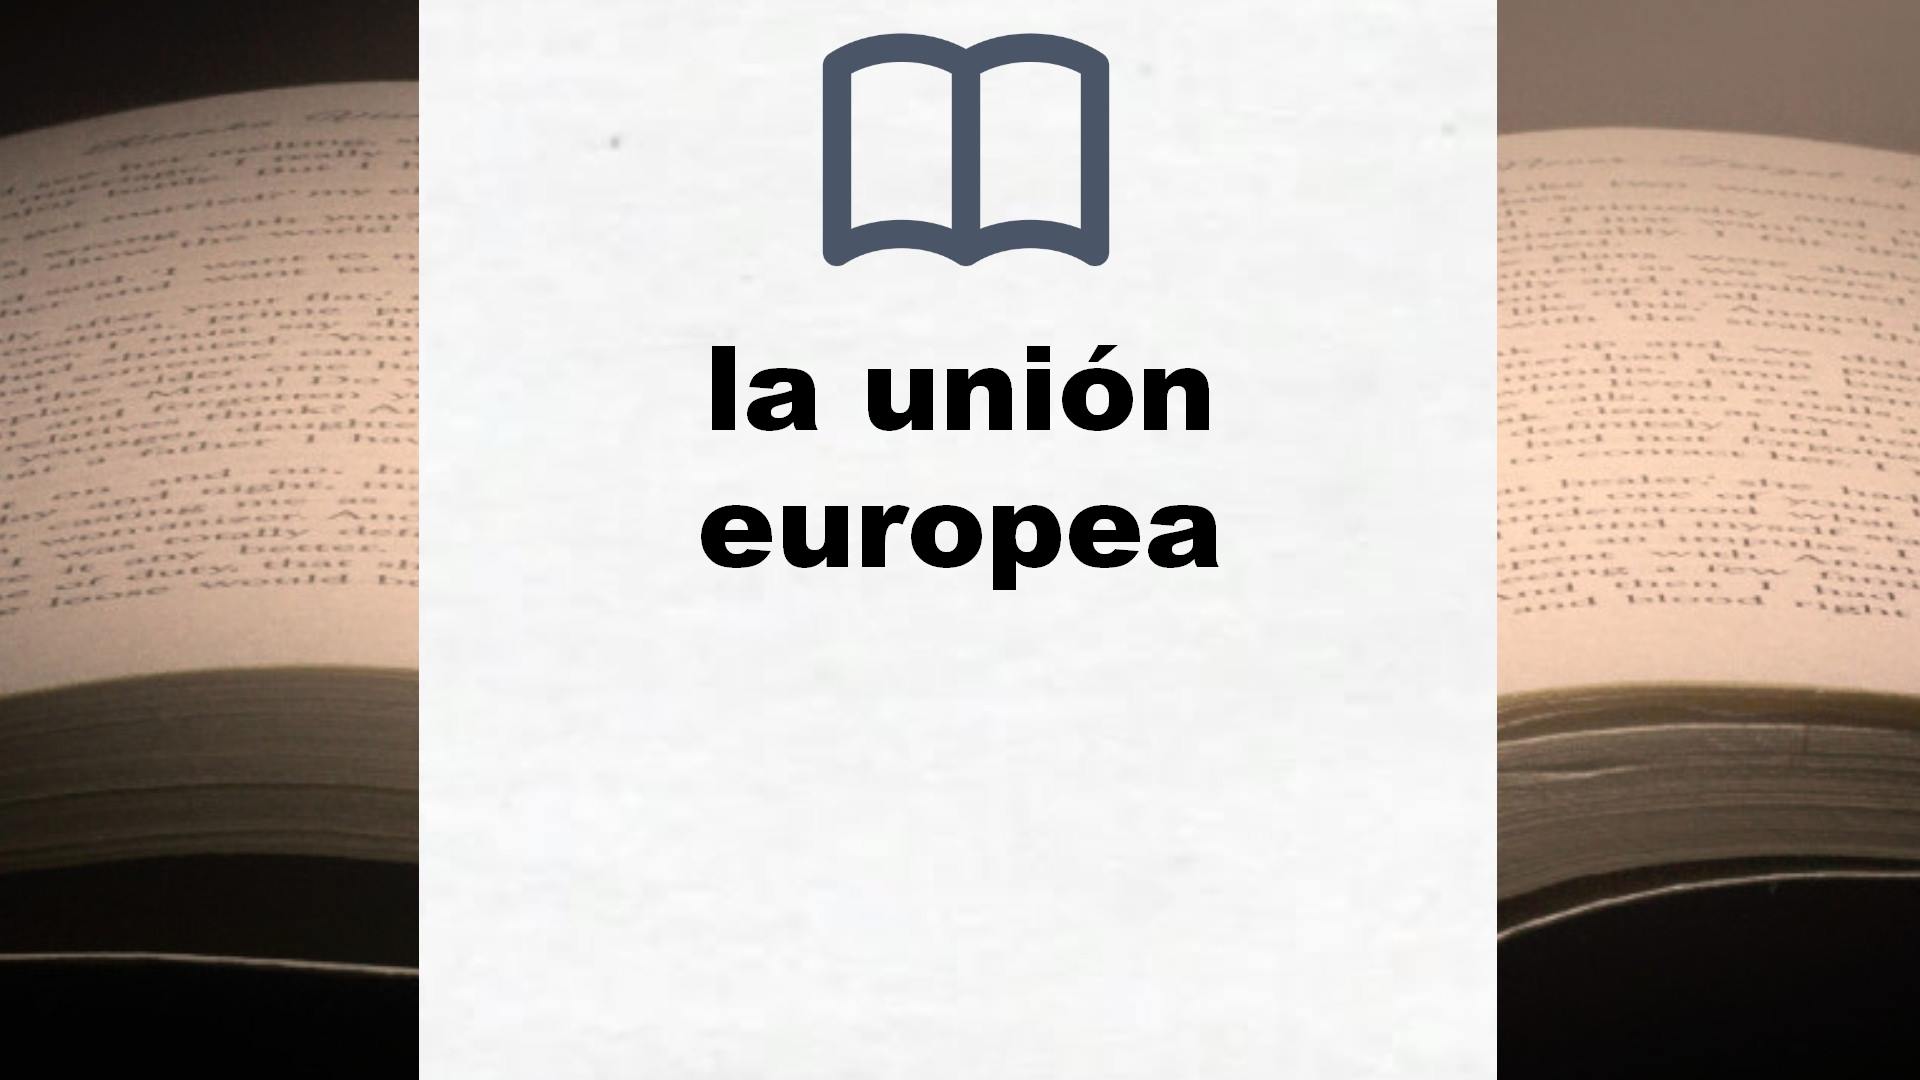 Libros sobre la unión europea